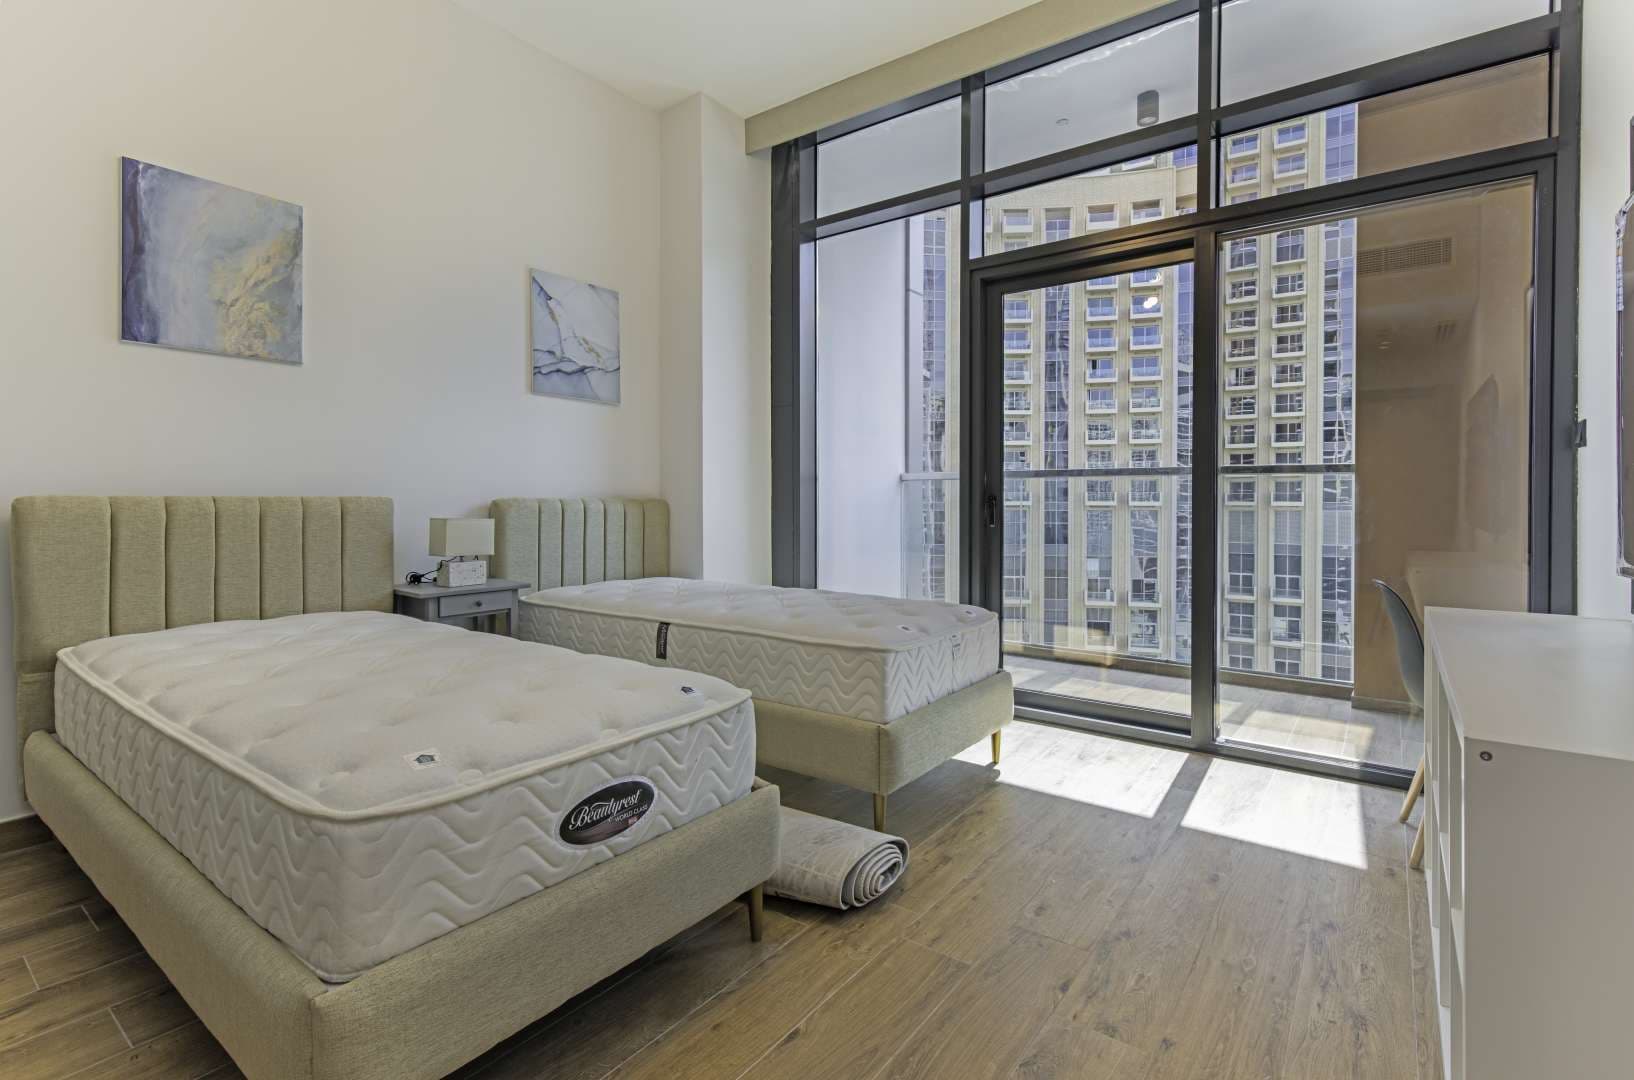 2 Bedroom Apartment For Rent Dubai Marina Moon Lp11718 17229a1f09026500.jpg